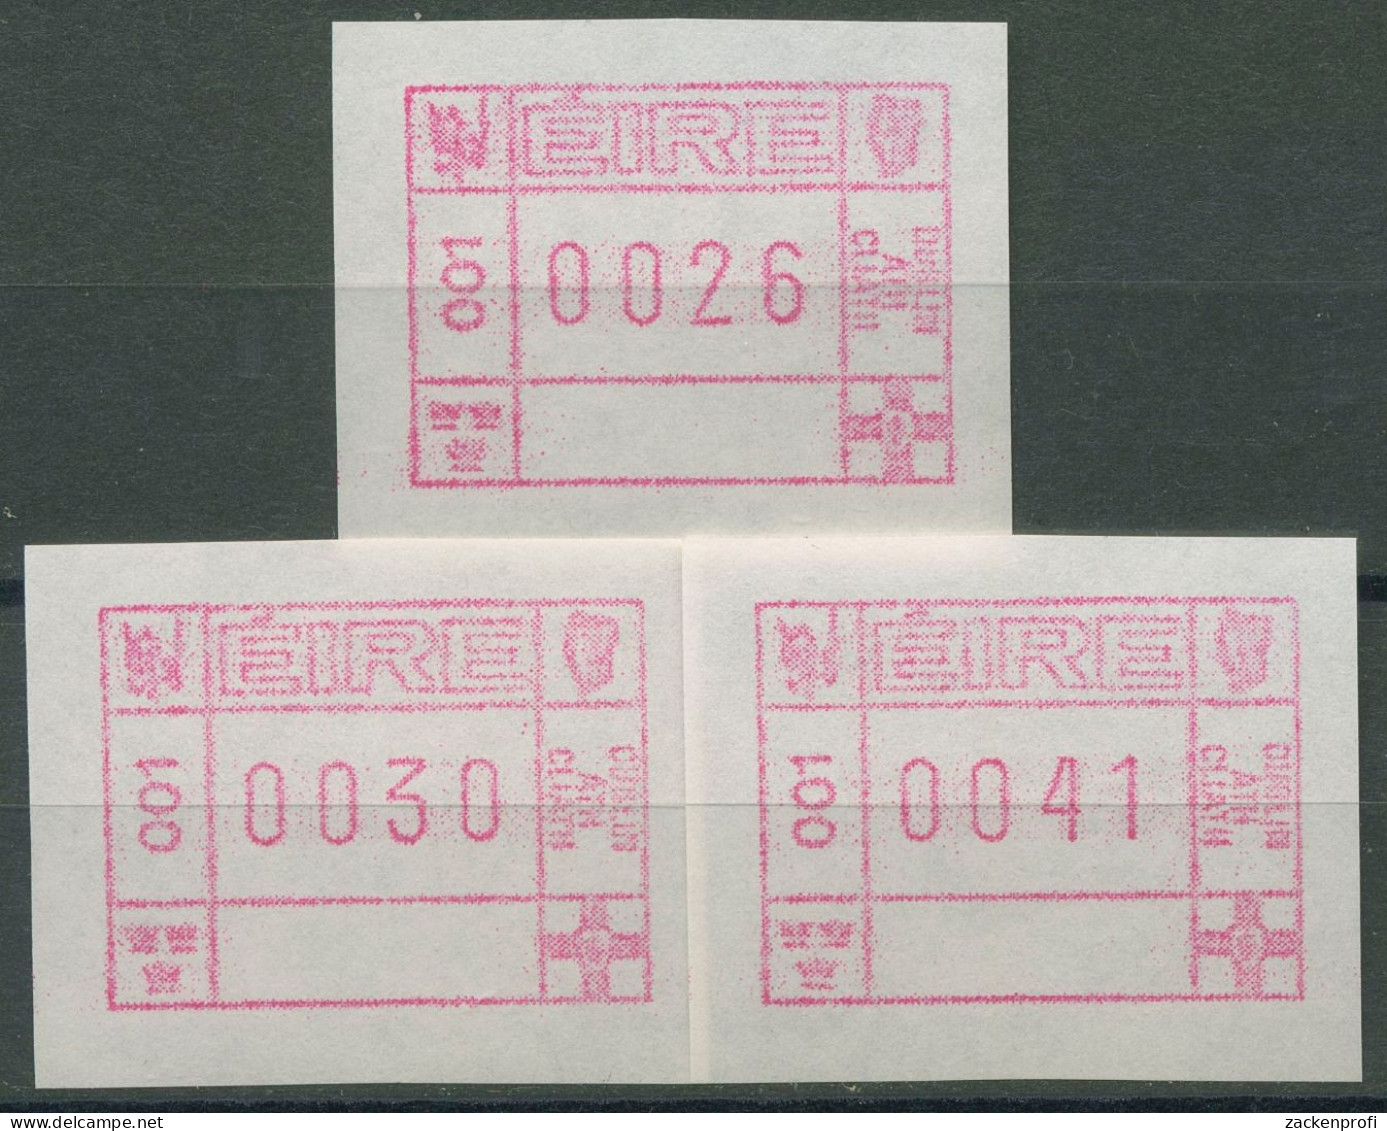 Irland Automatenmarken 1990 Freimarke Versandstellensatz ATM 1 S1 Postfrisch - Vignettes D'affranchissement (Frama)